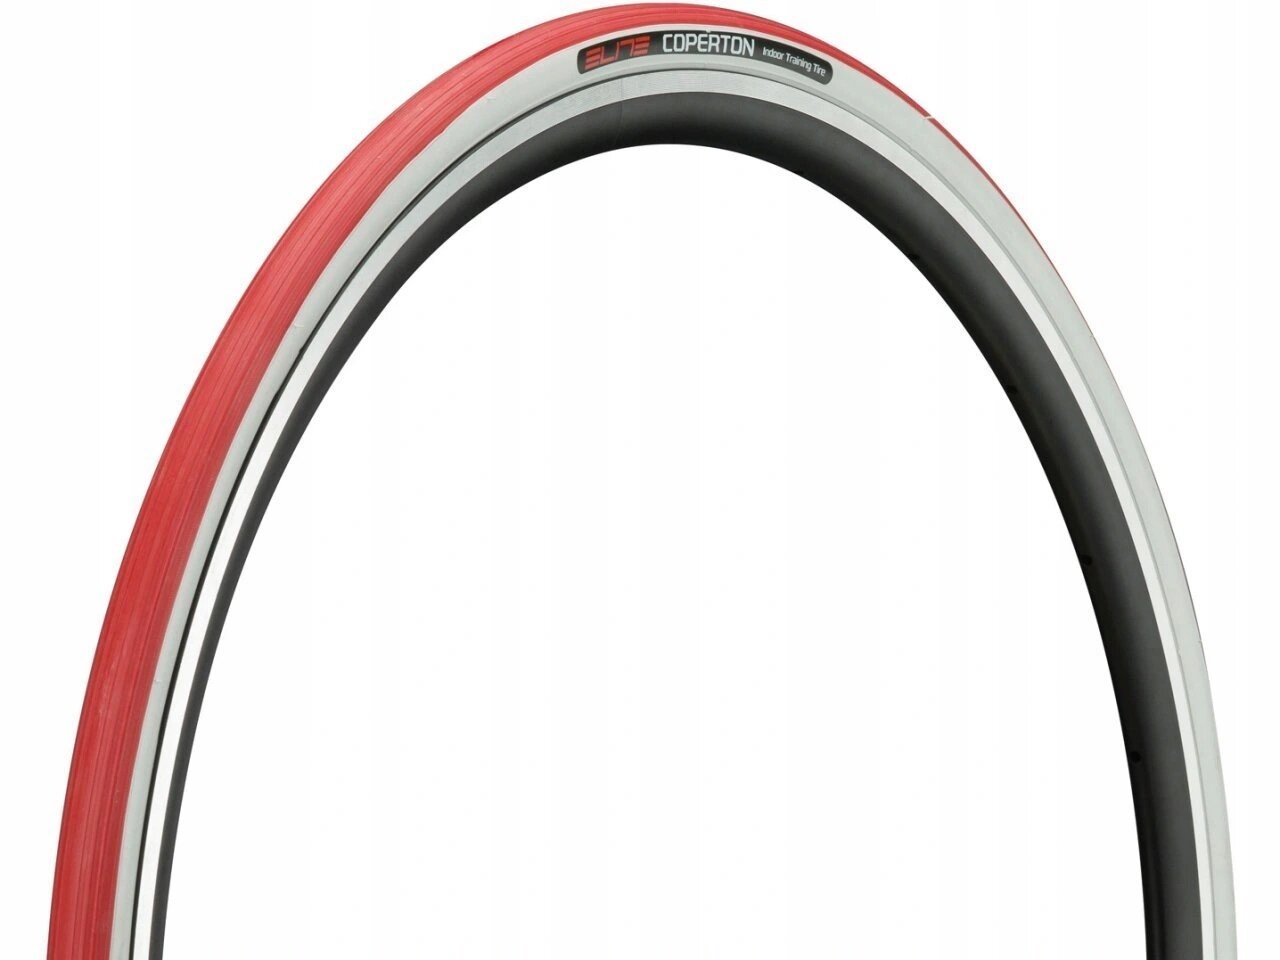 Покрышка Elite Coperton для шоссейного и горного велосипеда с колесами 29"